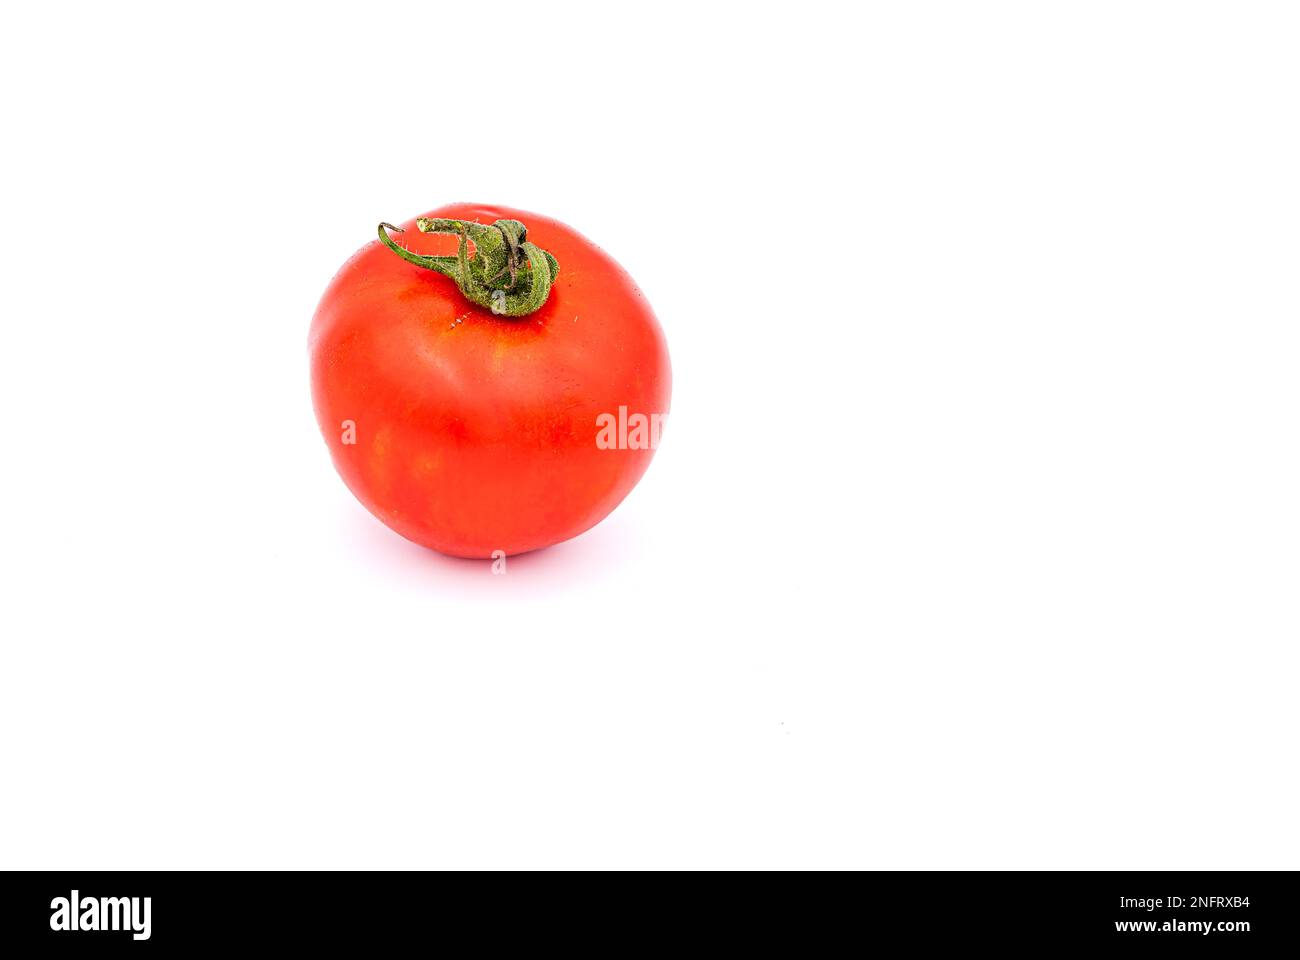 Un caratteristico pomodoro rosso di vite con un gambo come vegetale popolare e sano isolato su uno sfondo bianco Foto Stock